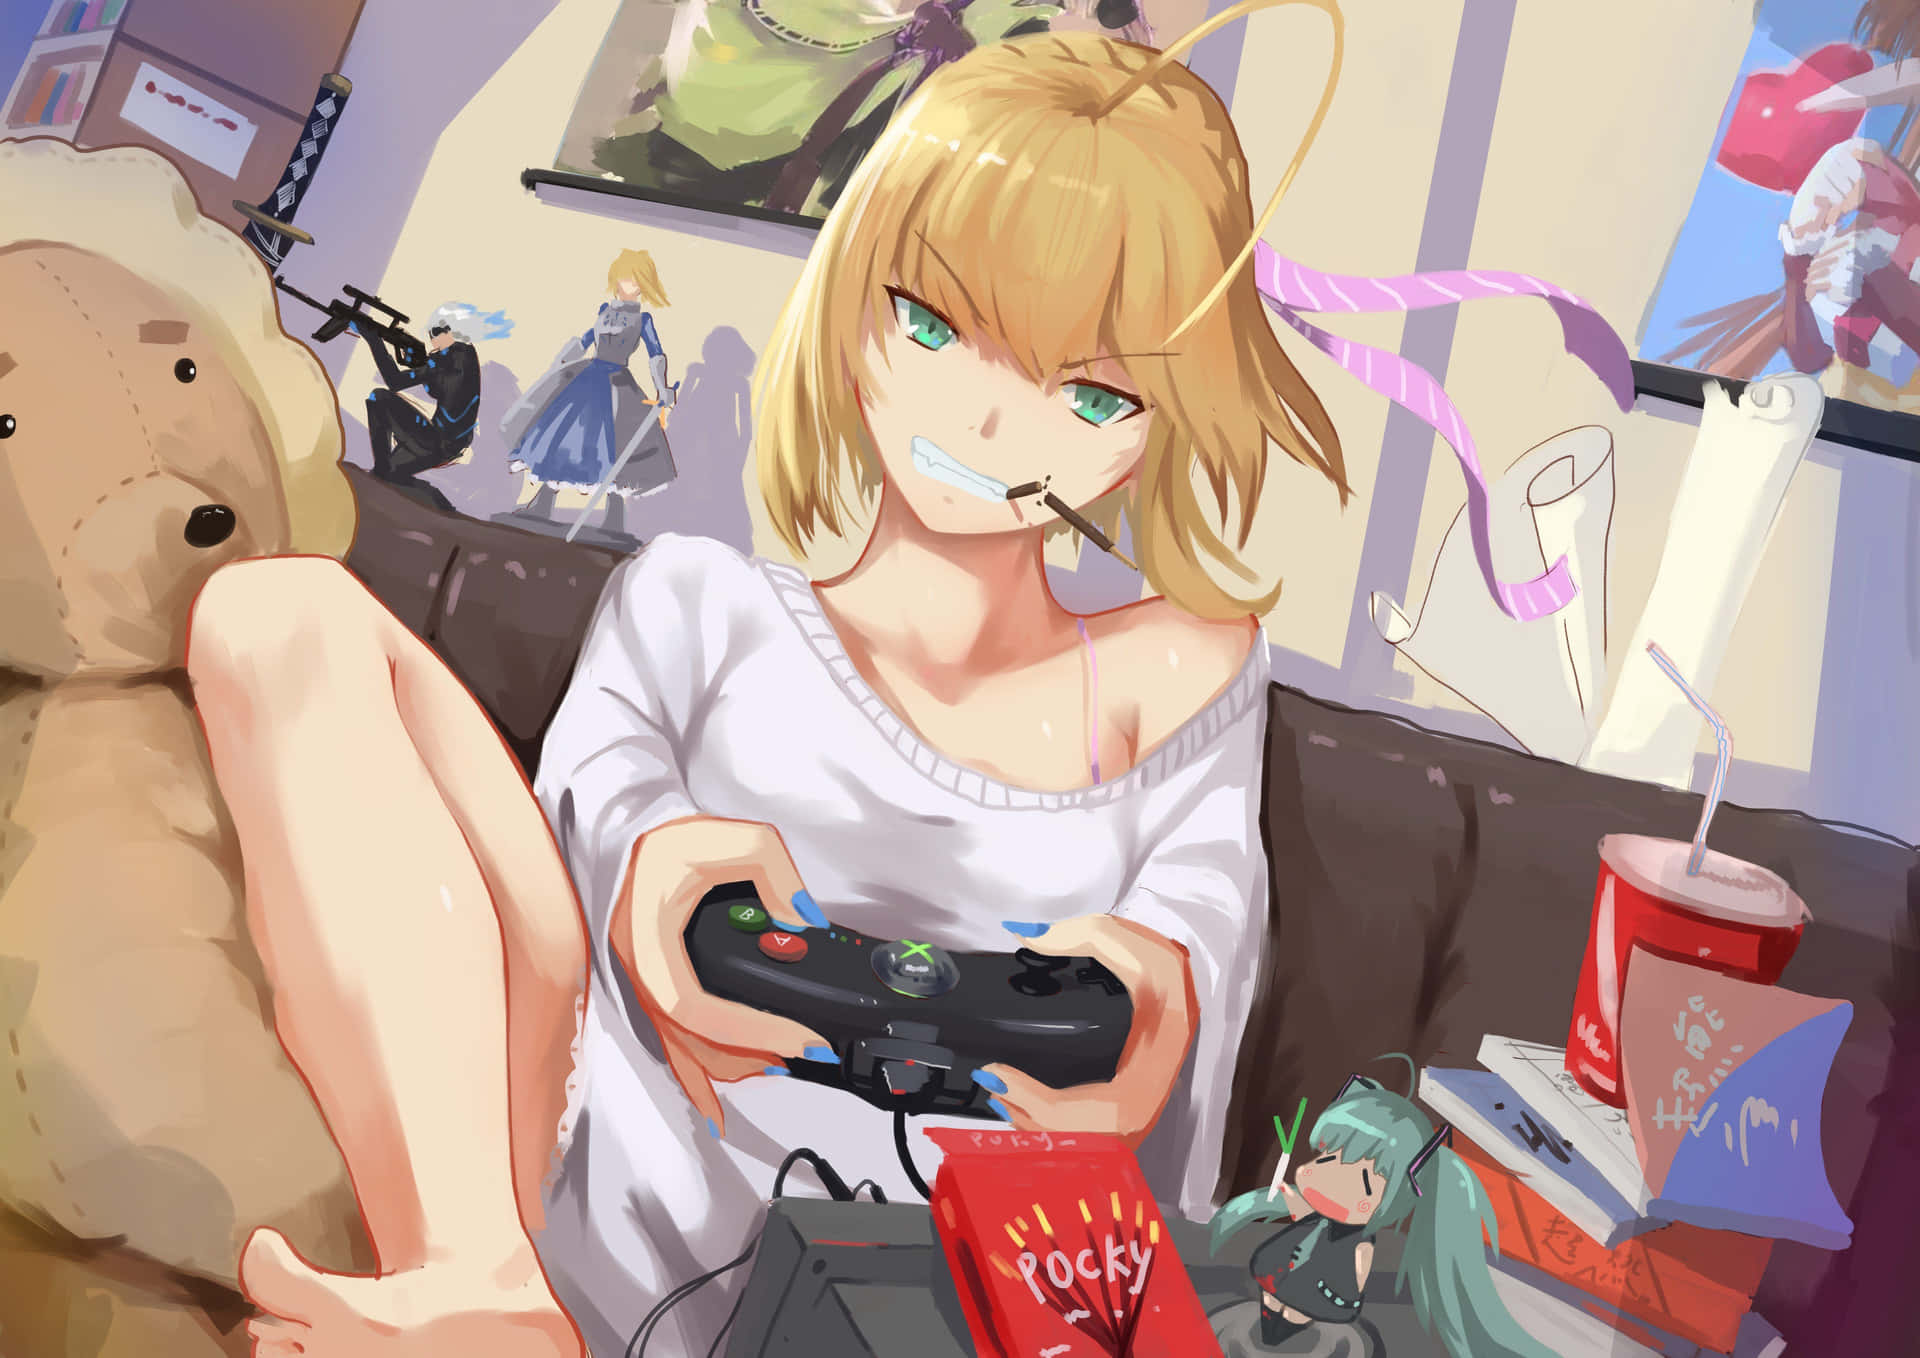 Xboxprofilbild Anime Mädchen. Wallpaper